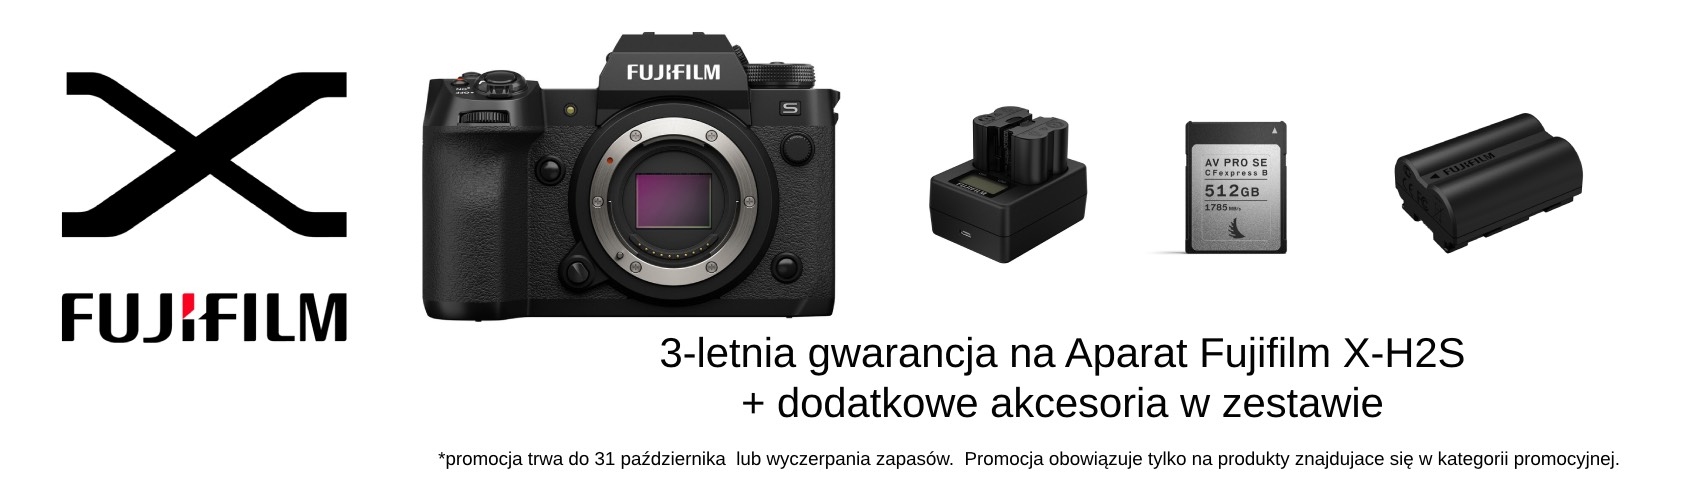 Odbierz 3 lata gwarancji i dodatkowe akcesoria w zestawie przy zakupie Fujifilm X-H2S